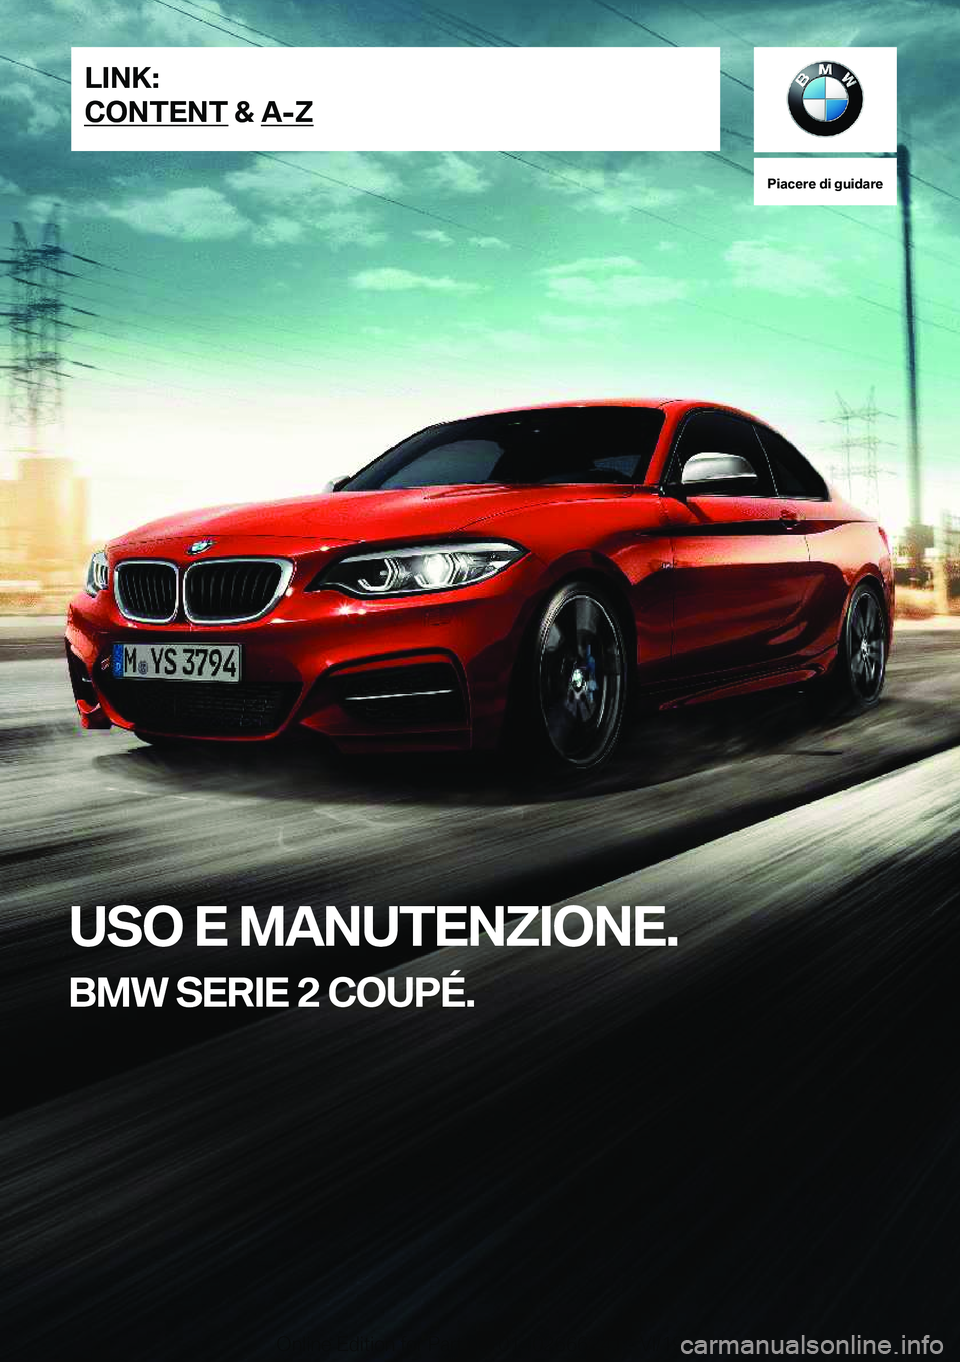 BMW 2 SERIES COUPE 2020  Libretti Di Uso E manutenzione (in Italian) �P�i�a�c�e�r�e��d�i��g�u�i�d�a�r�e
�U�S�O��E��M�A�N�U�T�E�N�;�I�O�N�E�.
�B�M�W��S�E�R�I�E��2��C�O�U�P�